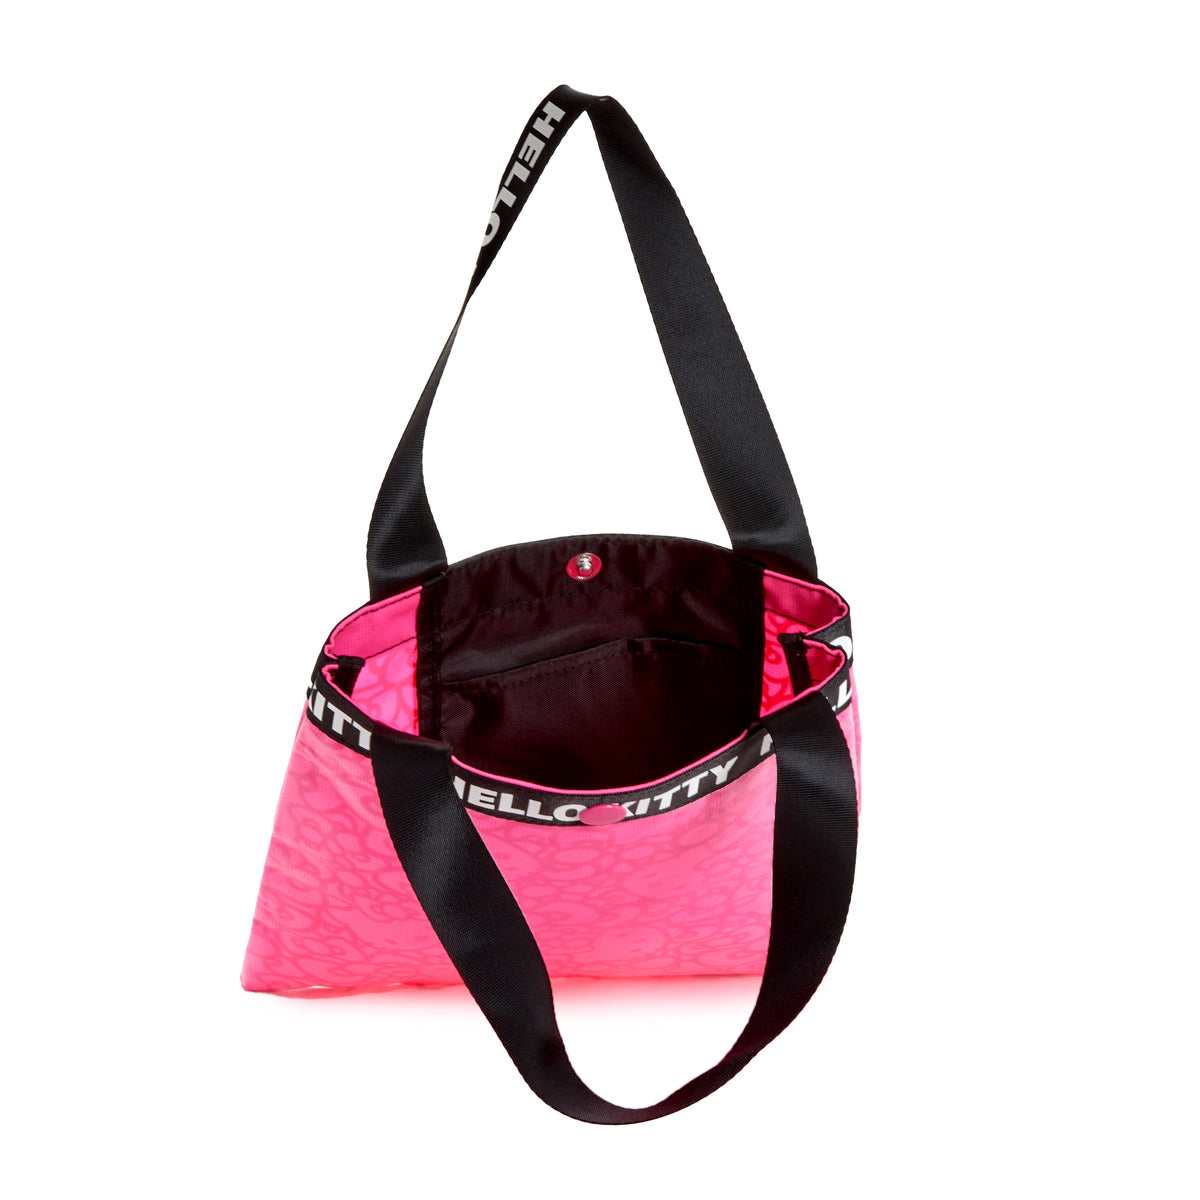 Louis Vuitton Hello Kitty Pinky Luxury Handbag | Hello kitty handbags,  Small handbags, Women handbags